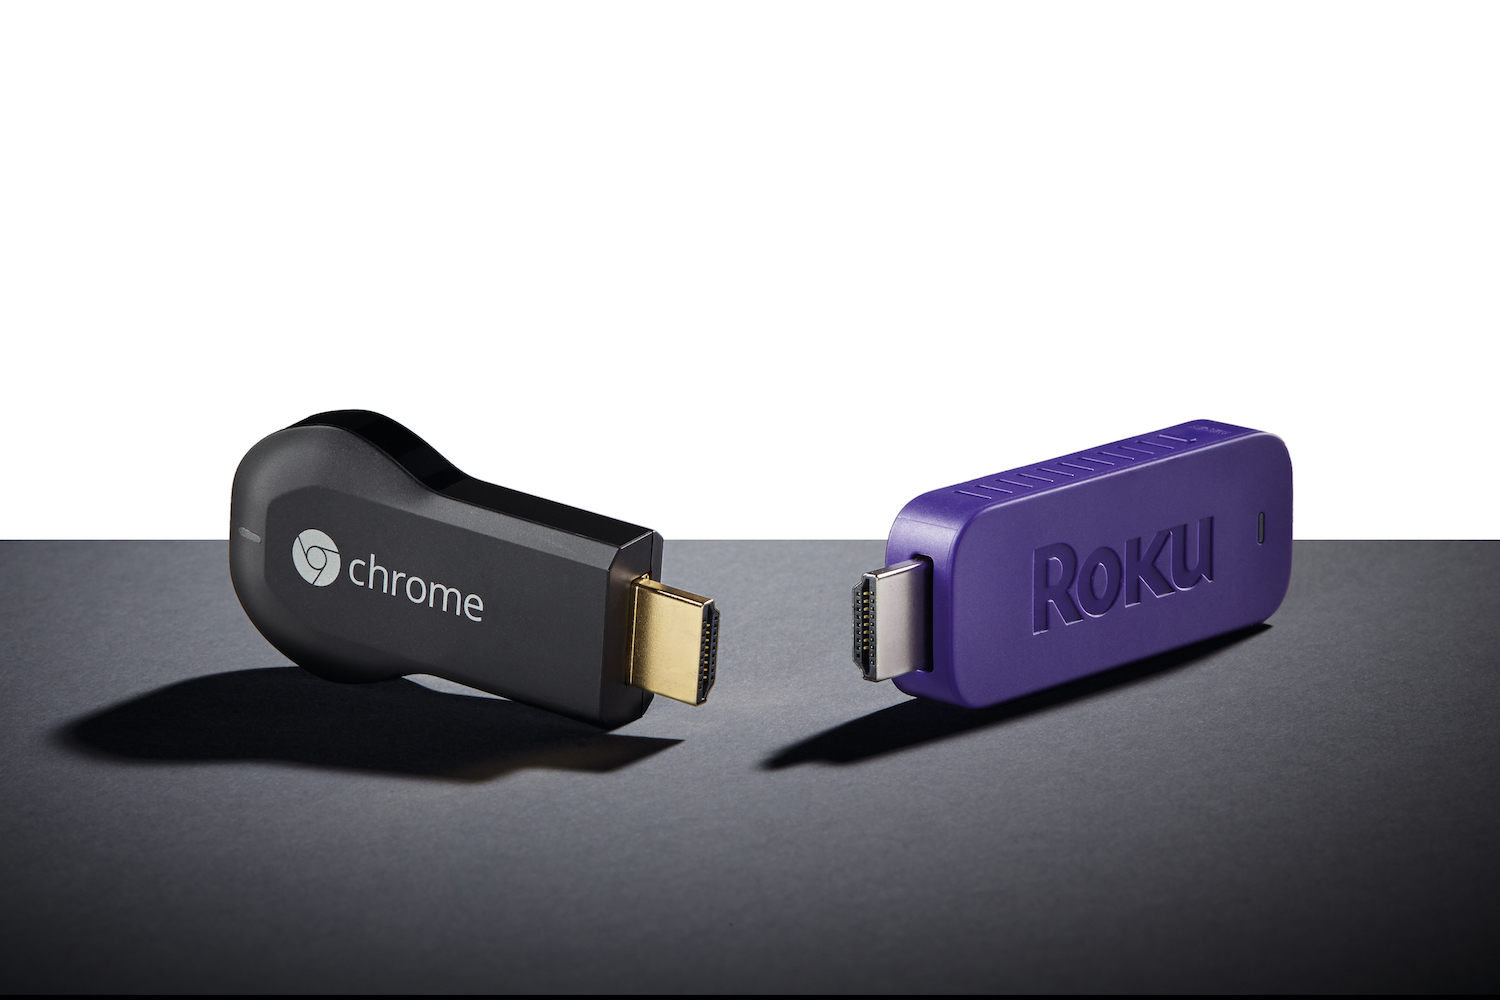 Chromecast, Roku Express, Fire TV Stick o Roku Stick: ¿cuál es mejor? -  Digital Trends Español